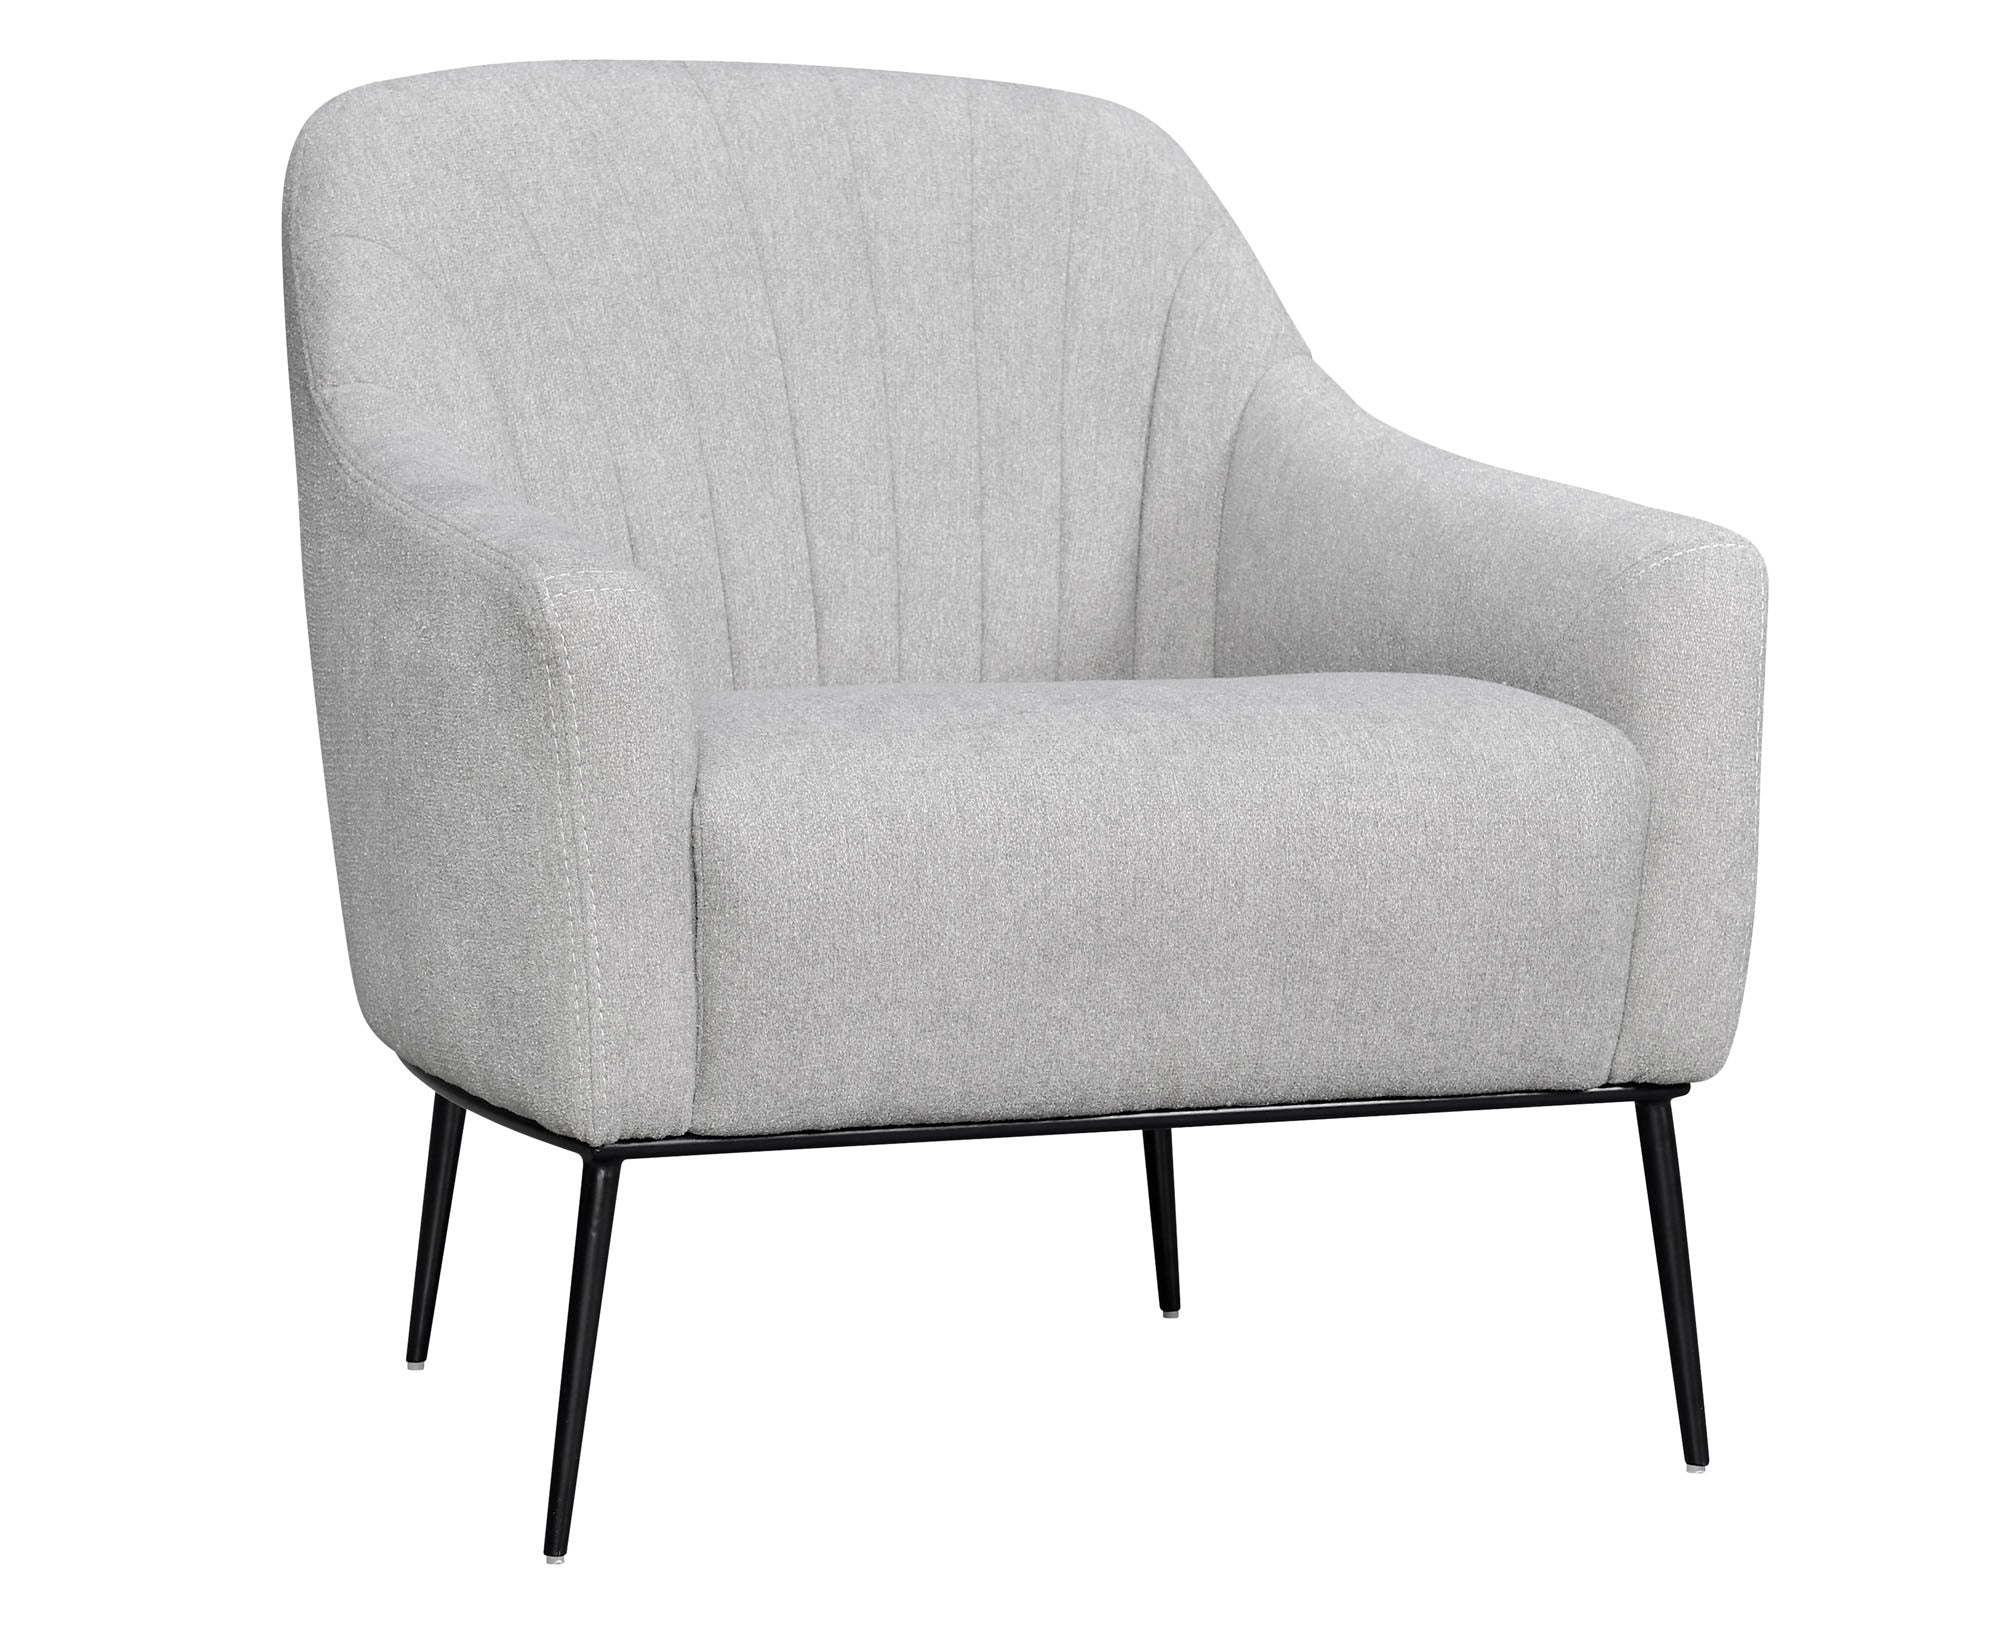 Ella Channel Accent Chair - MJM Furniture